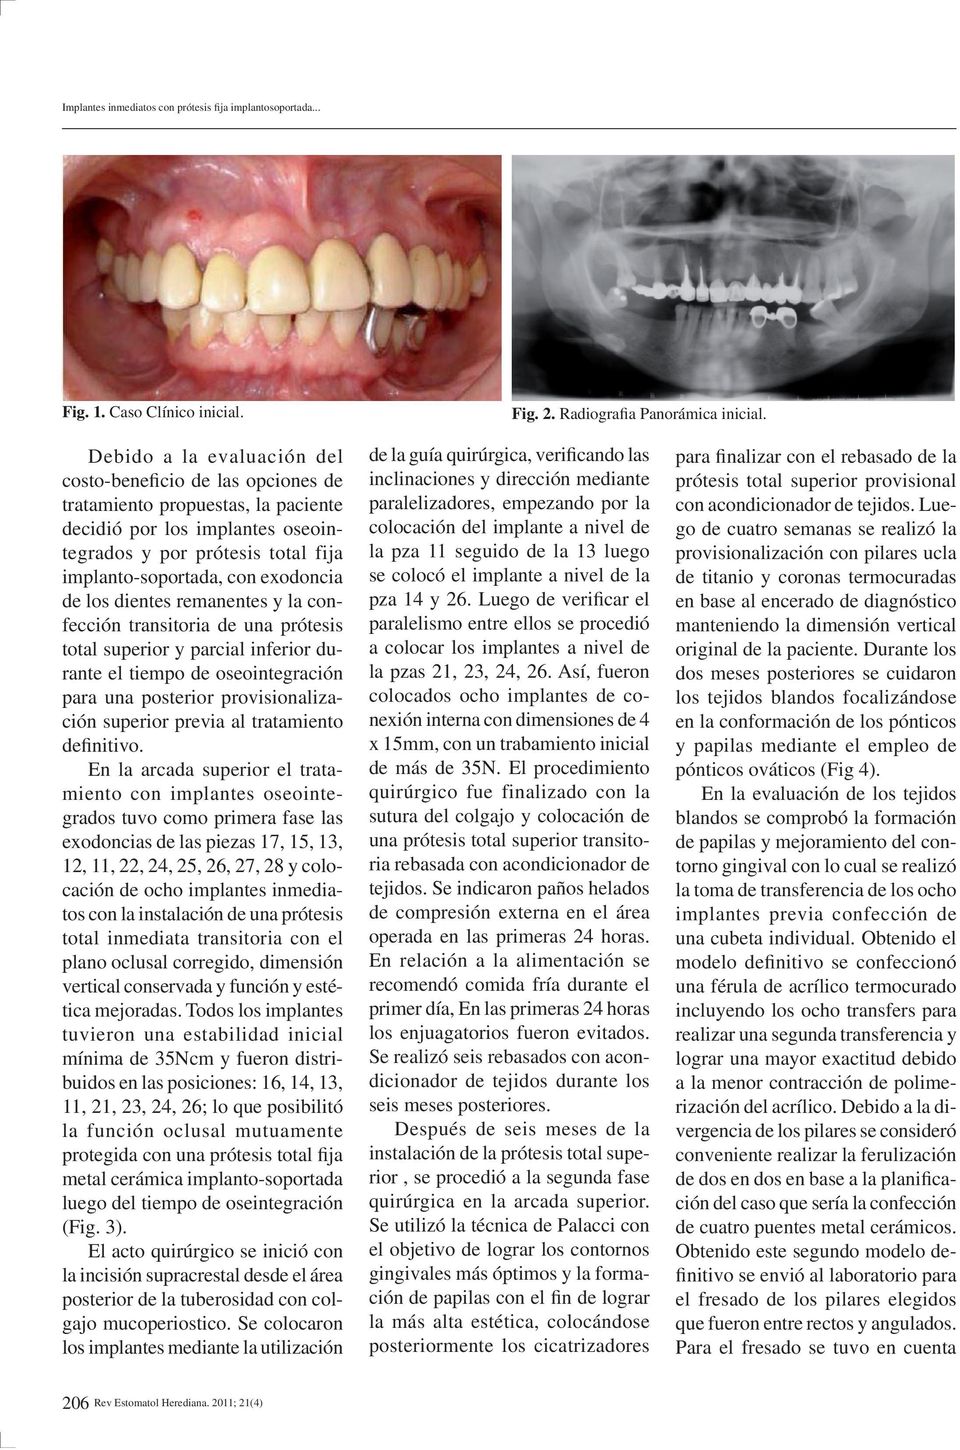 de los dientes remanentes y la confección transitoria de una prótesis total superior y parcial inferior durante el tiempo de oseointegración para una posterior provisionalización superior previa al